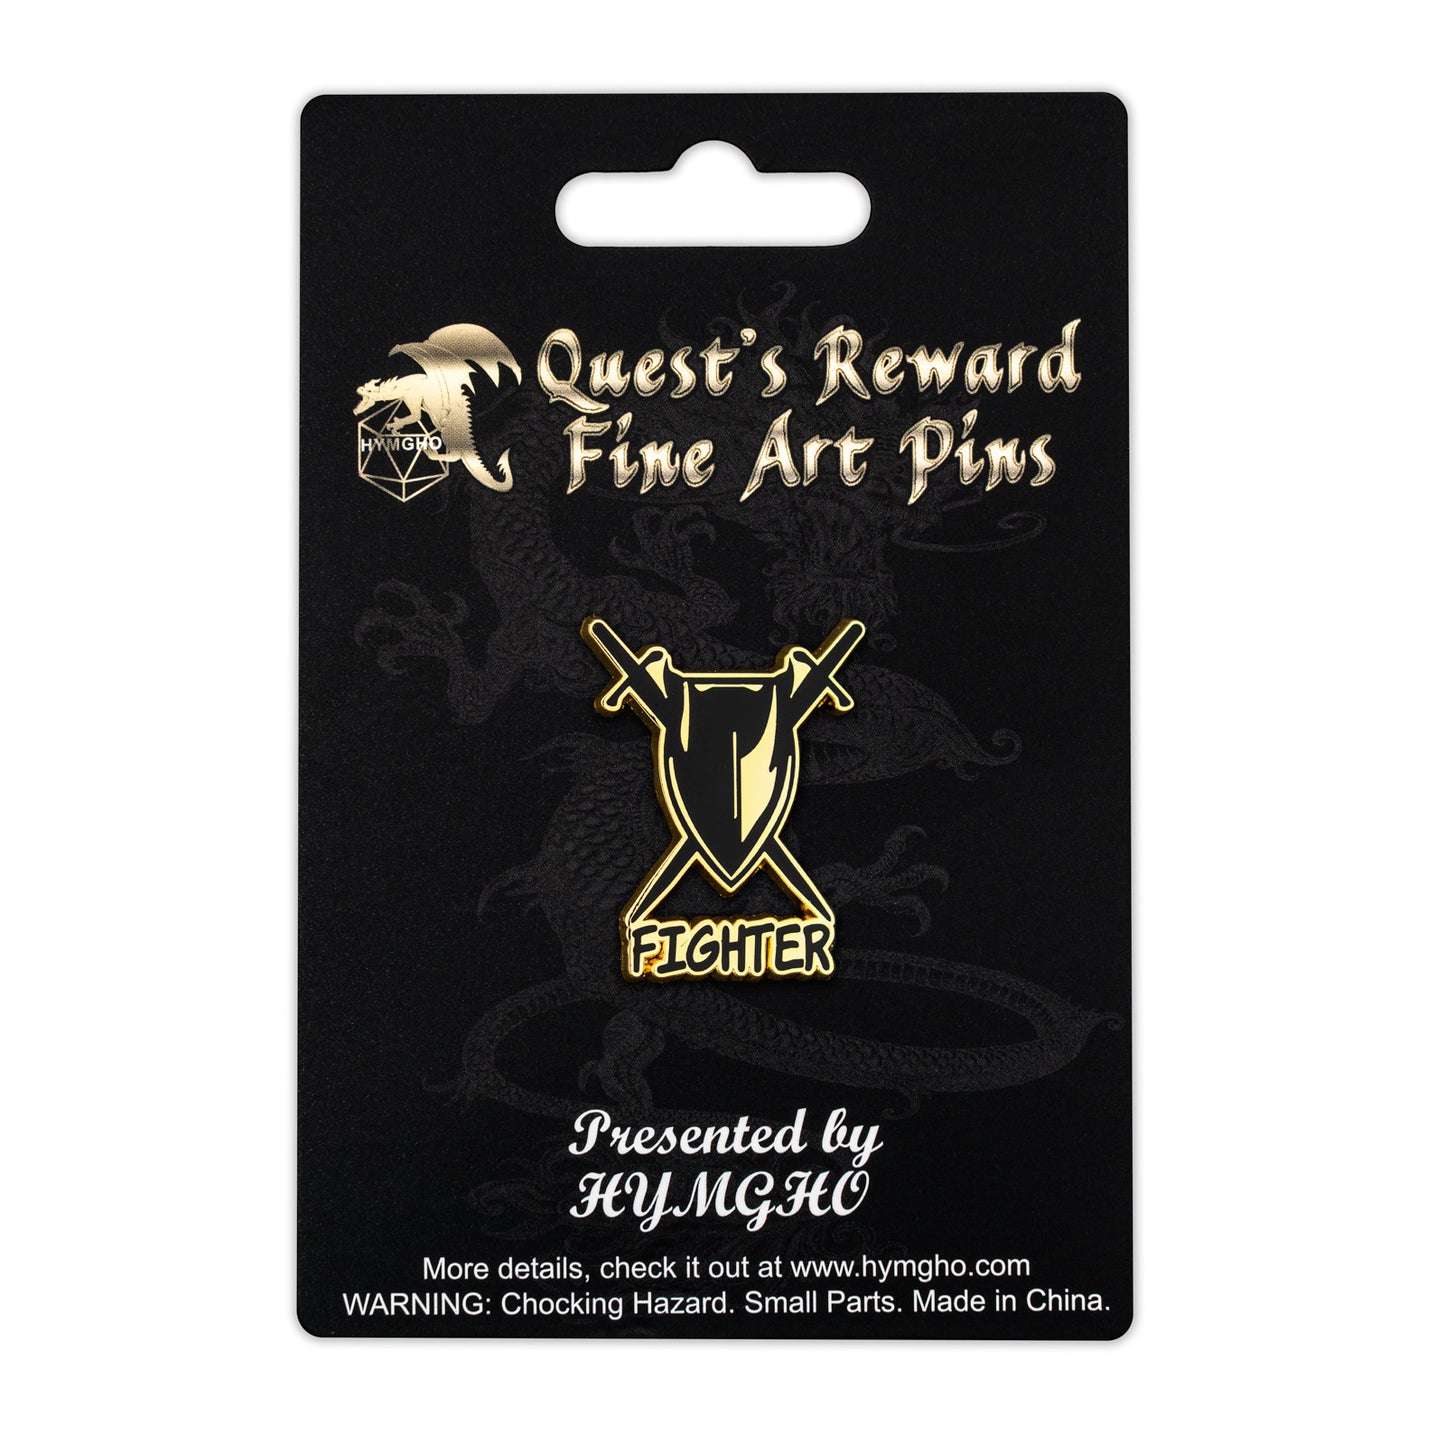 Quest's Reward Fine Art Class Pins: FIGHTER